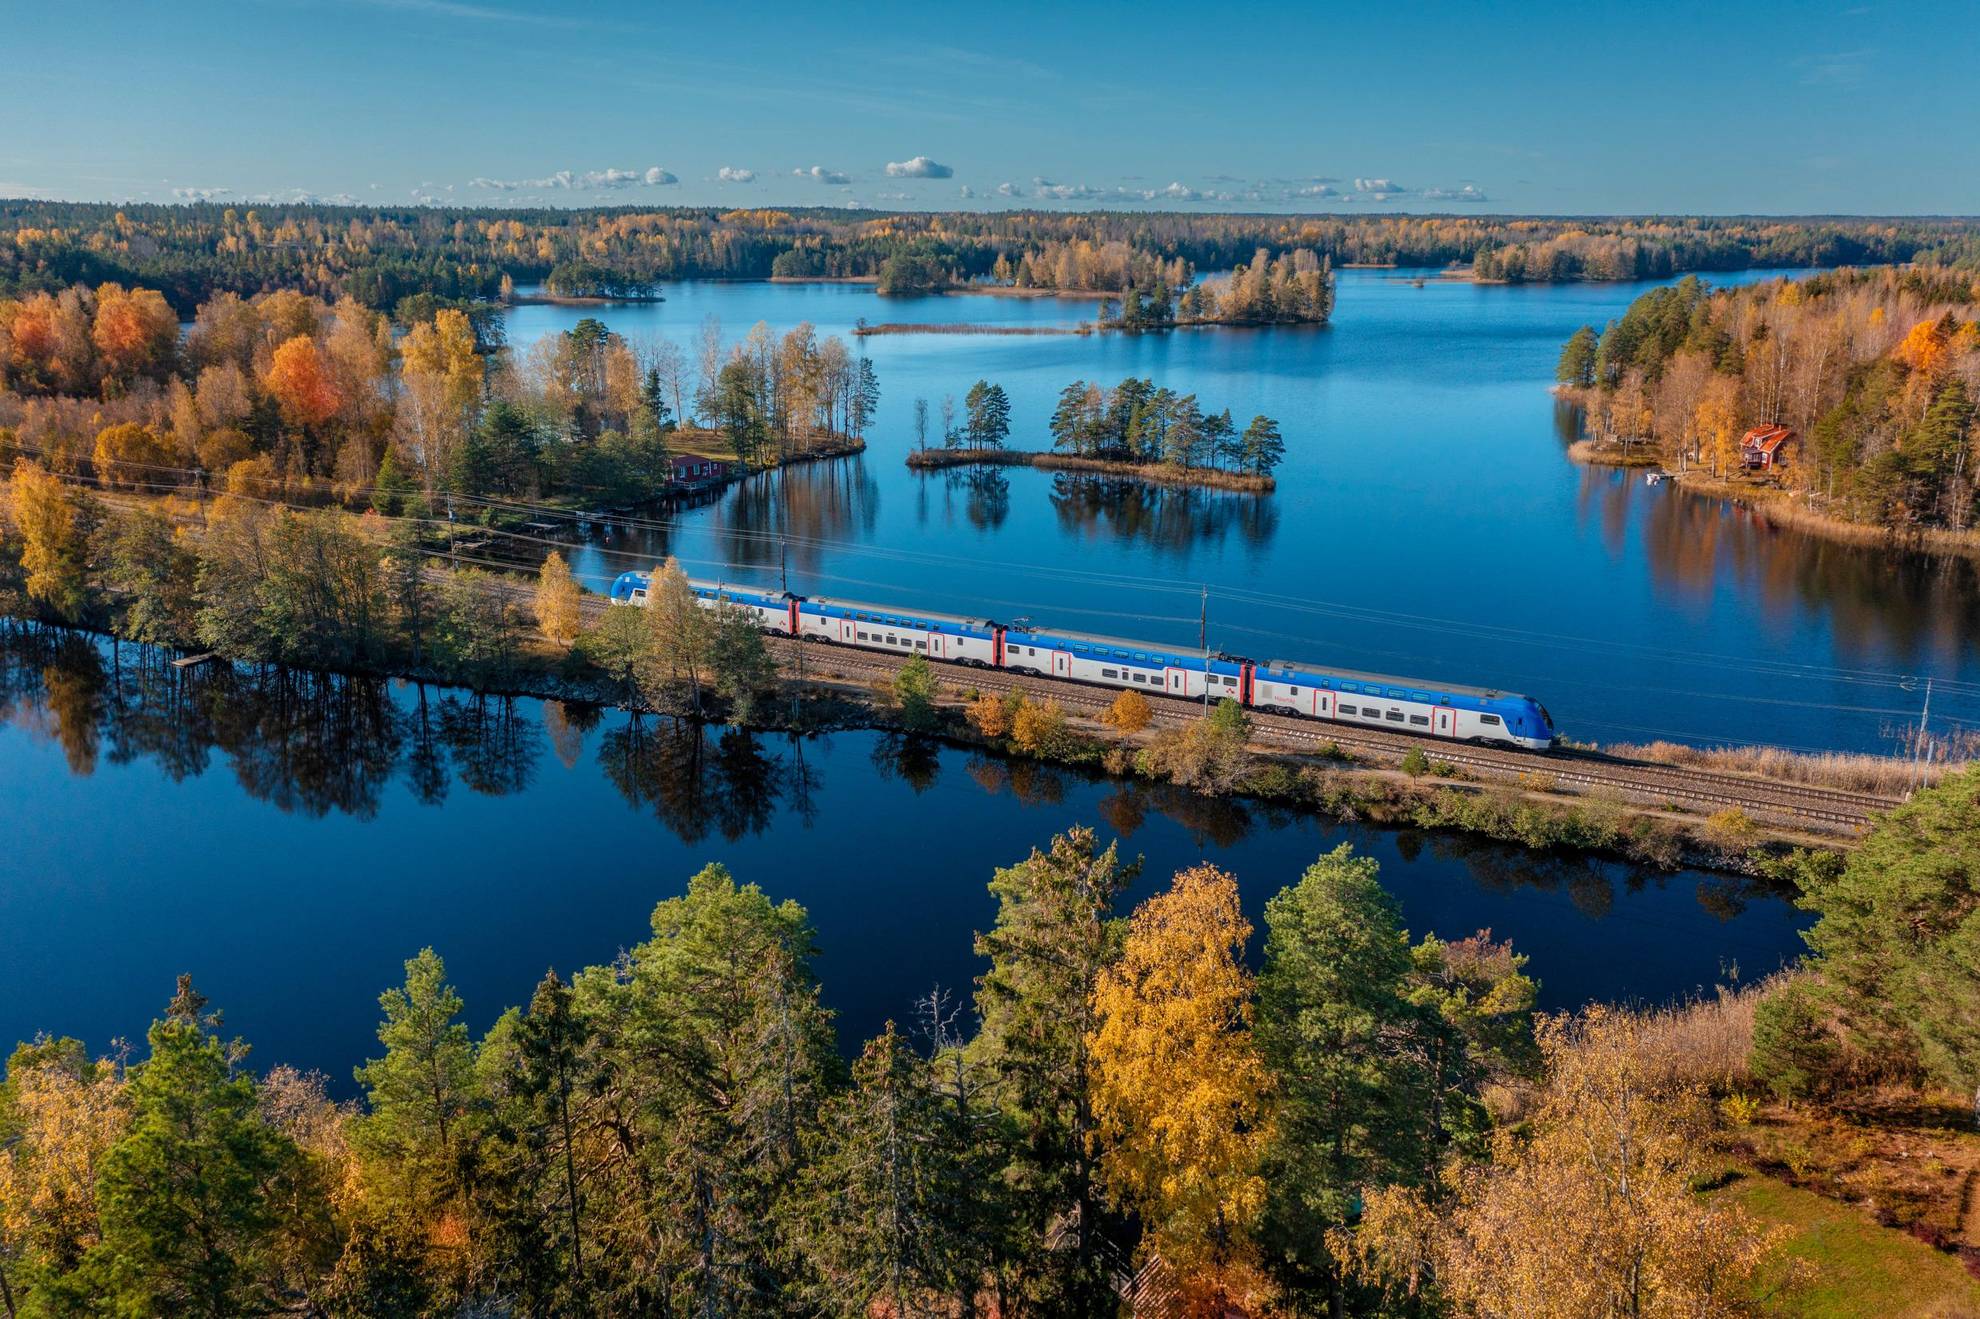 Een luchtfoto van een trein die in de herfst door een boslandschap met meren rijdt.